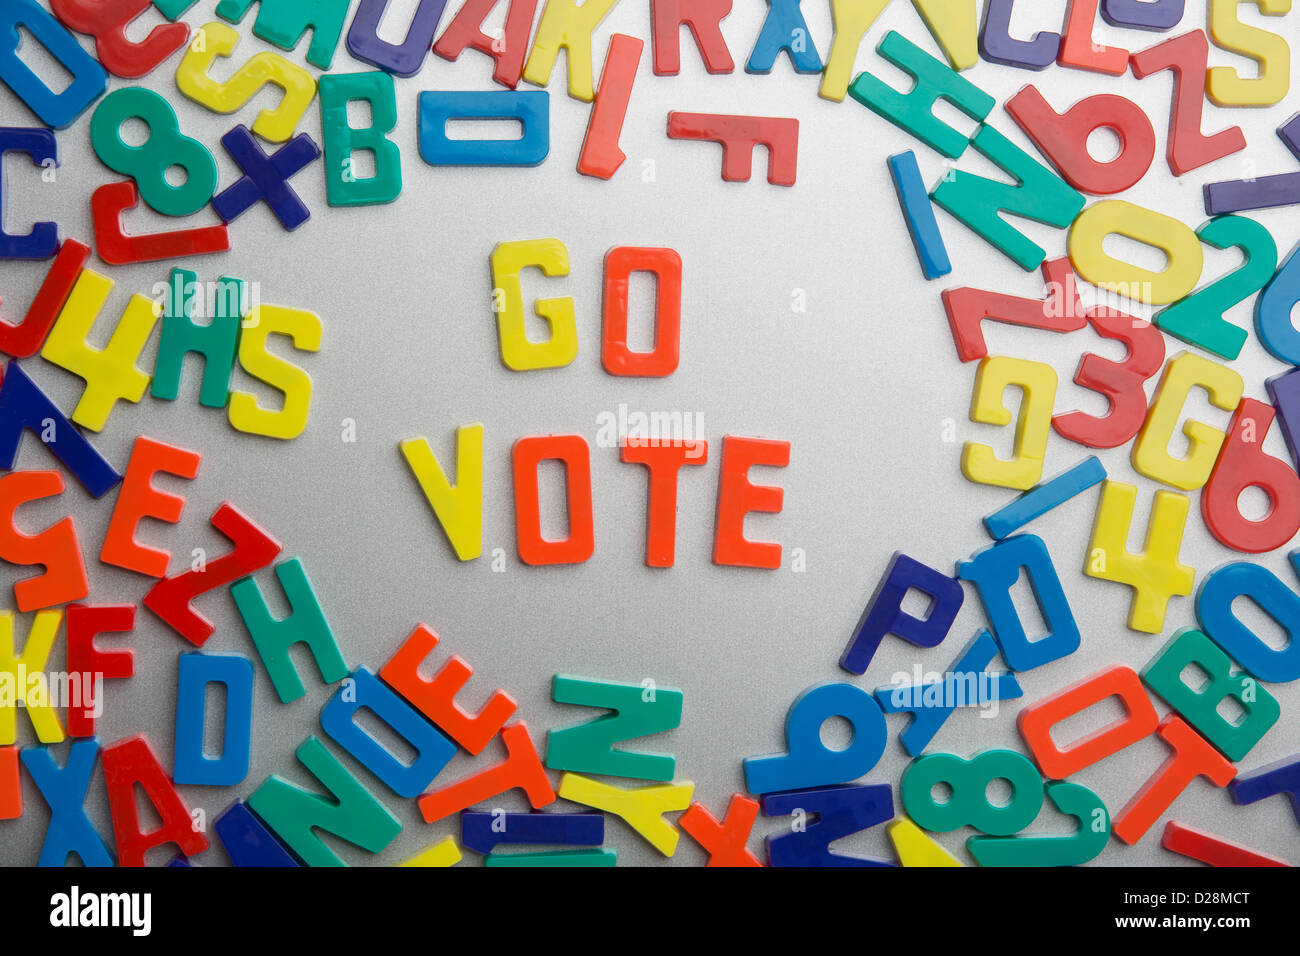 "Go Abstimmung" - Kühlschrank-Magnete buchstabieren Nachrichten aus einem Durcheinander von Buchstaben Stockfoto